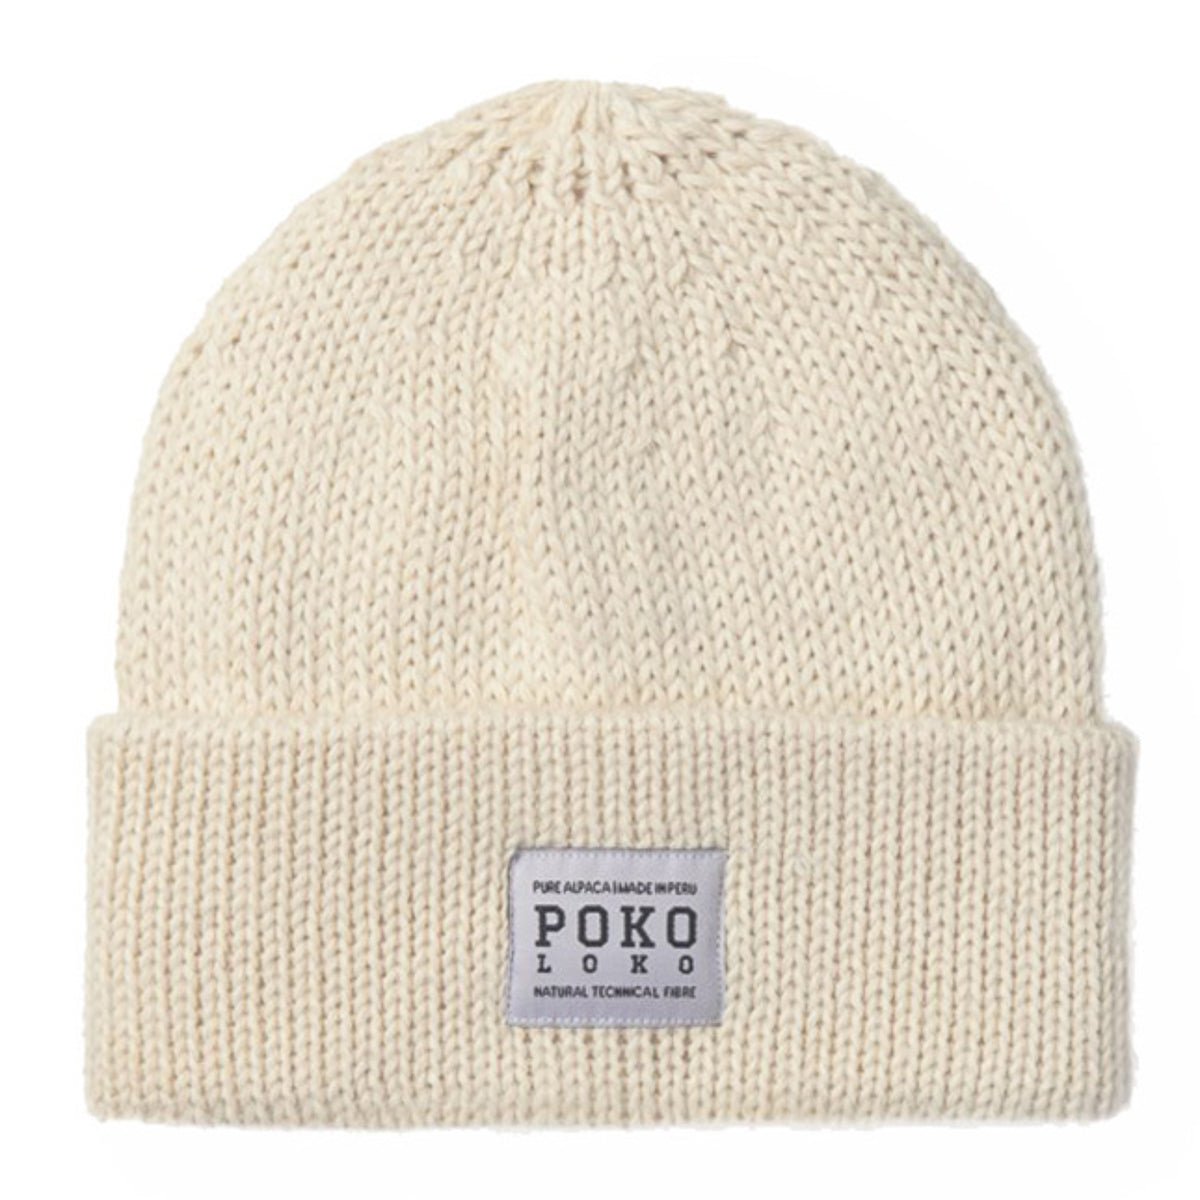 Tuque pur alpaga, chapeau de pêcheur unisexe - Boutique Equinoxe